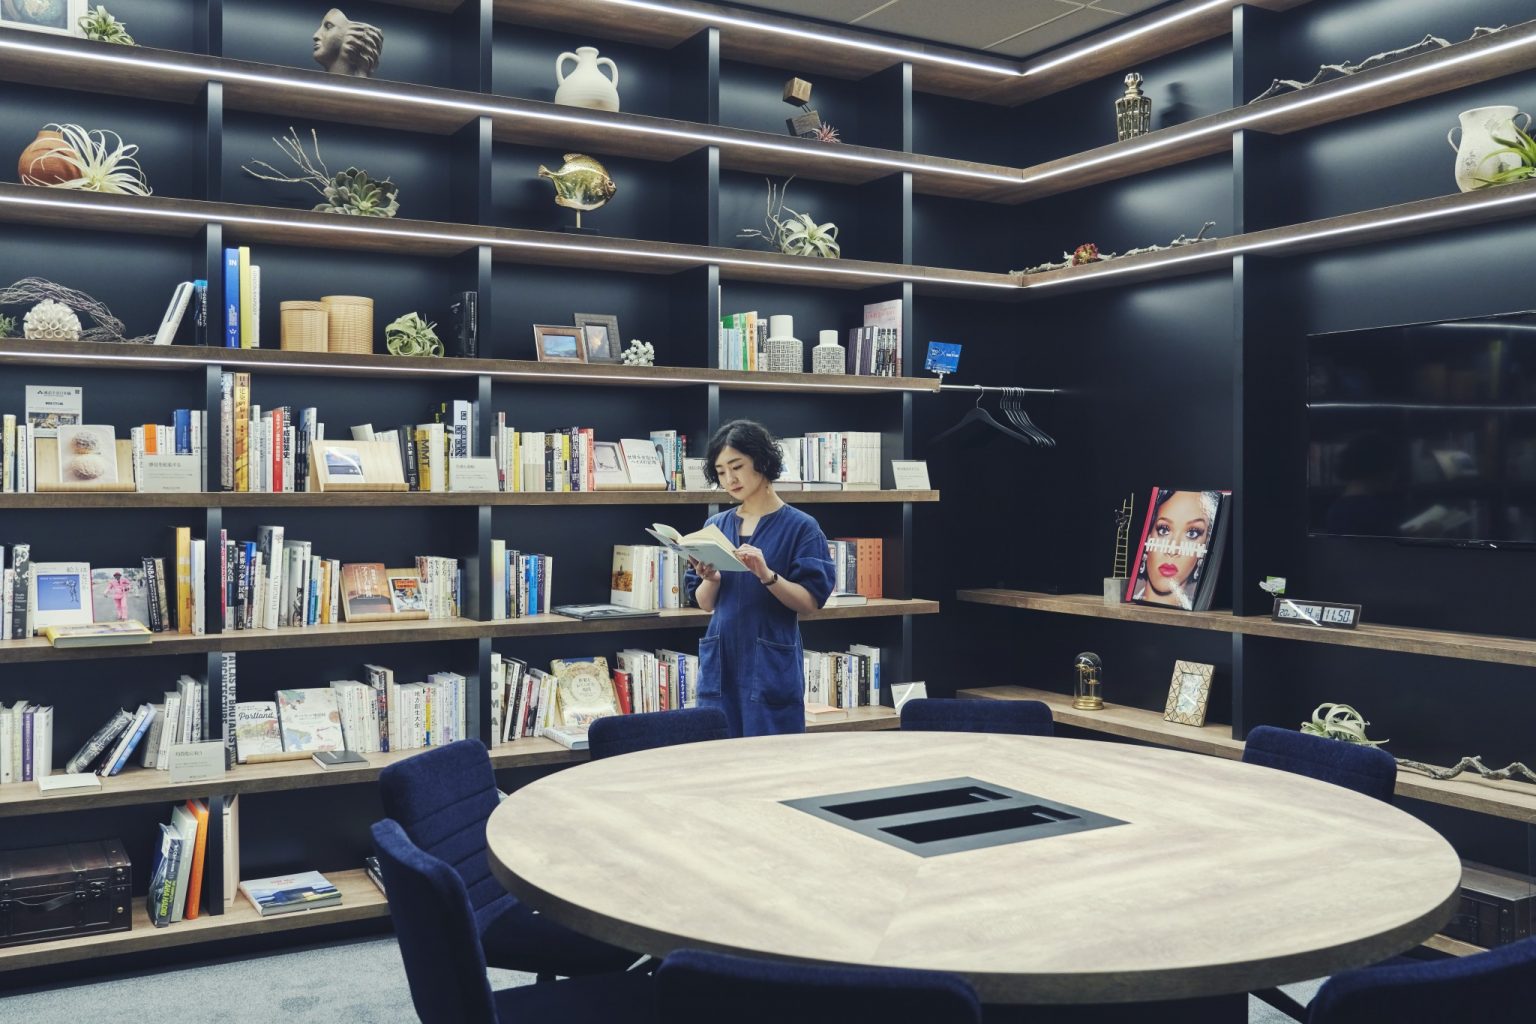 〈誠品生活日本橋〉が選書をした本棚がある部屋